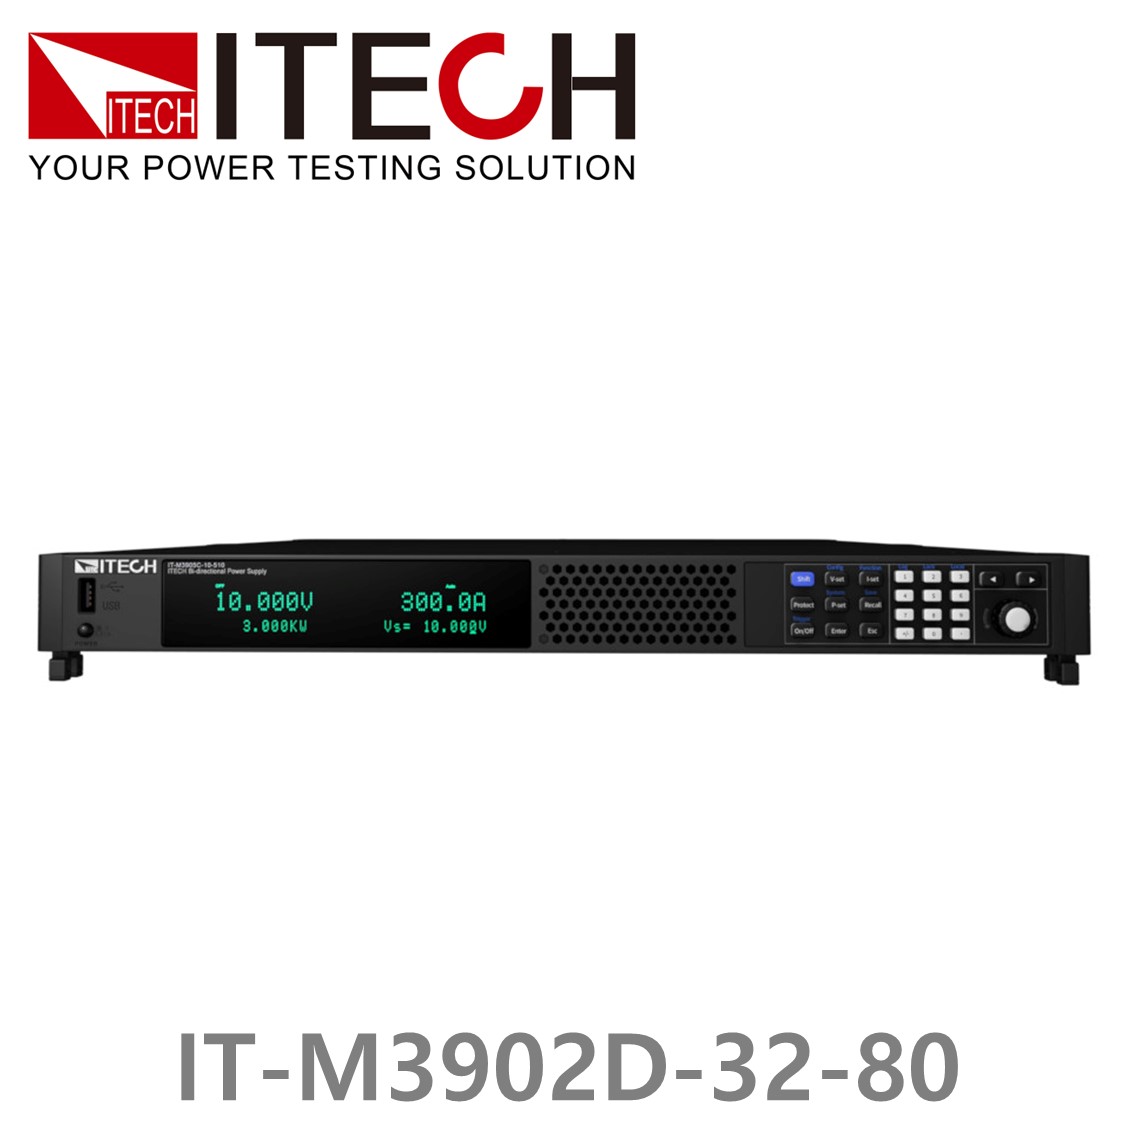 [ ITECH ] IT-M3902D-32-80 양방향 프로그래머블 DC전원공급기, DC파워서플라이